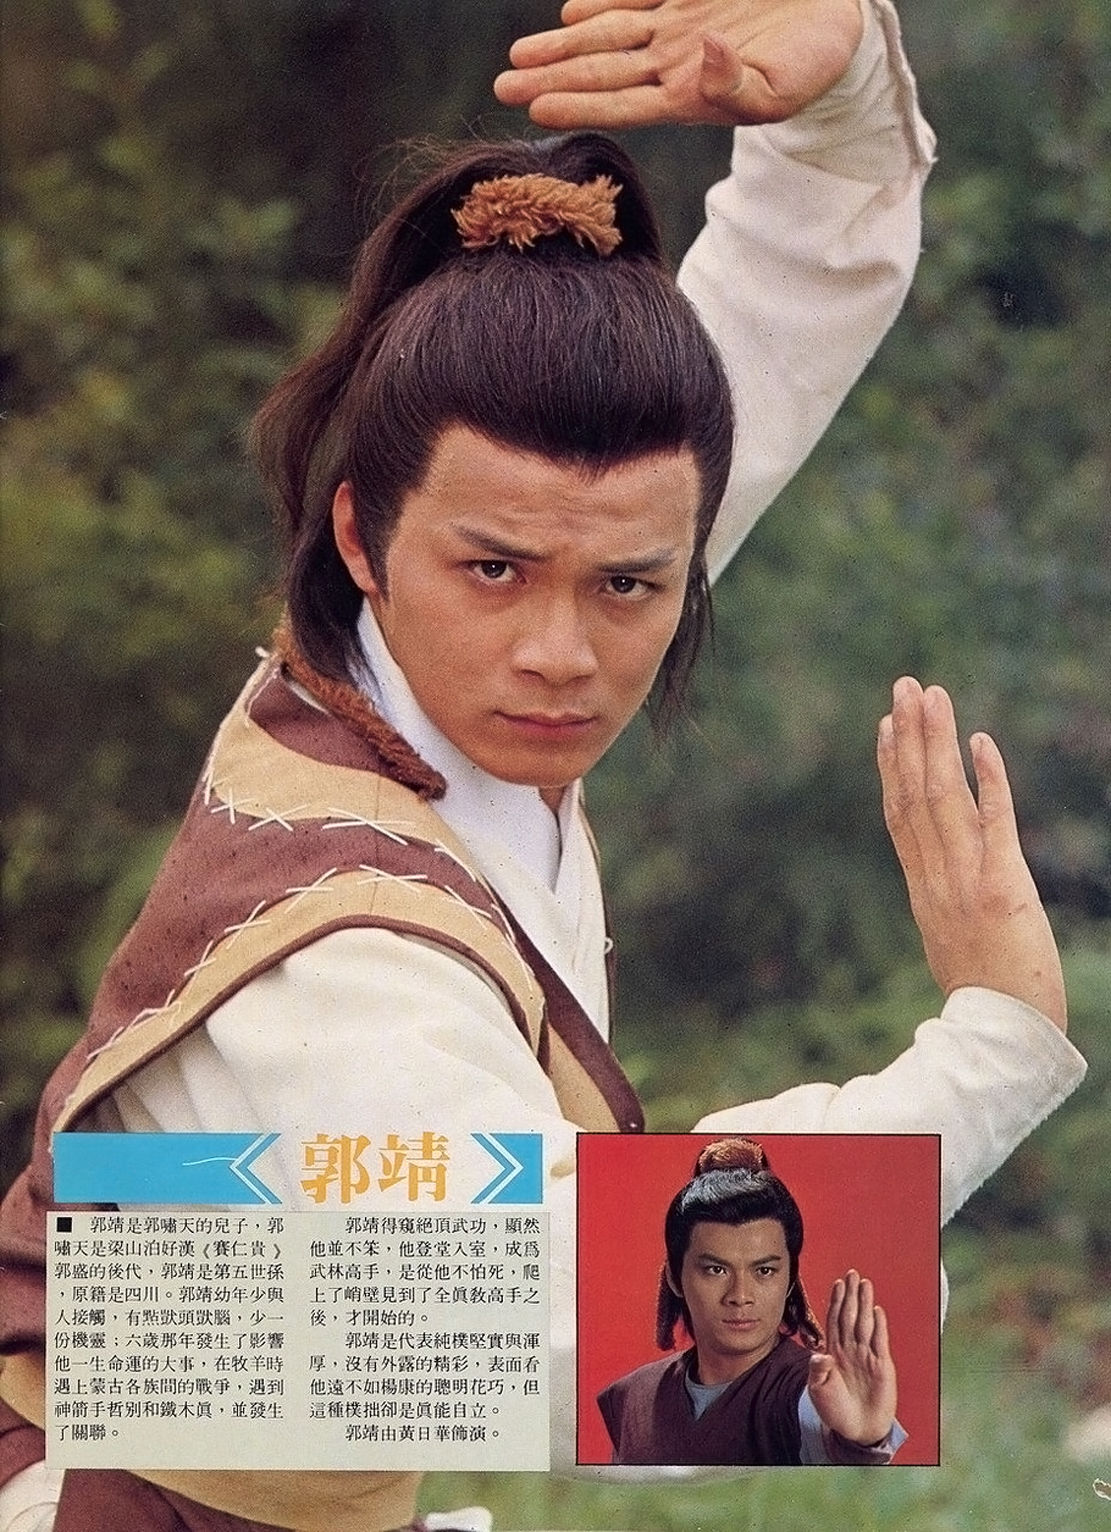 1983年经典版《射雕英雄传之铁血丹心》,郭靖